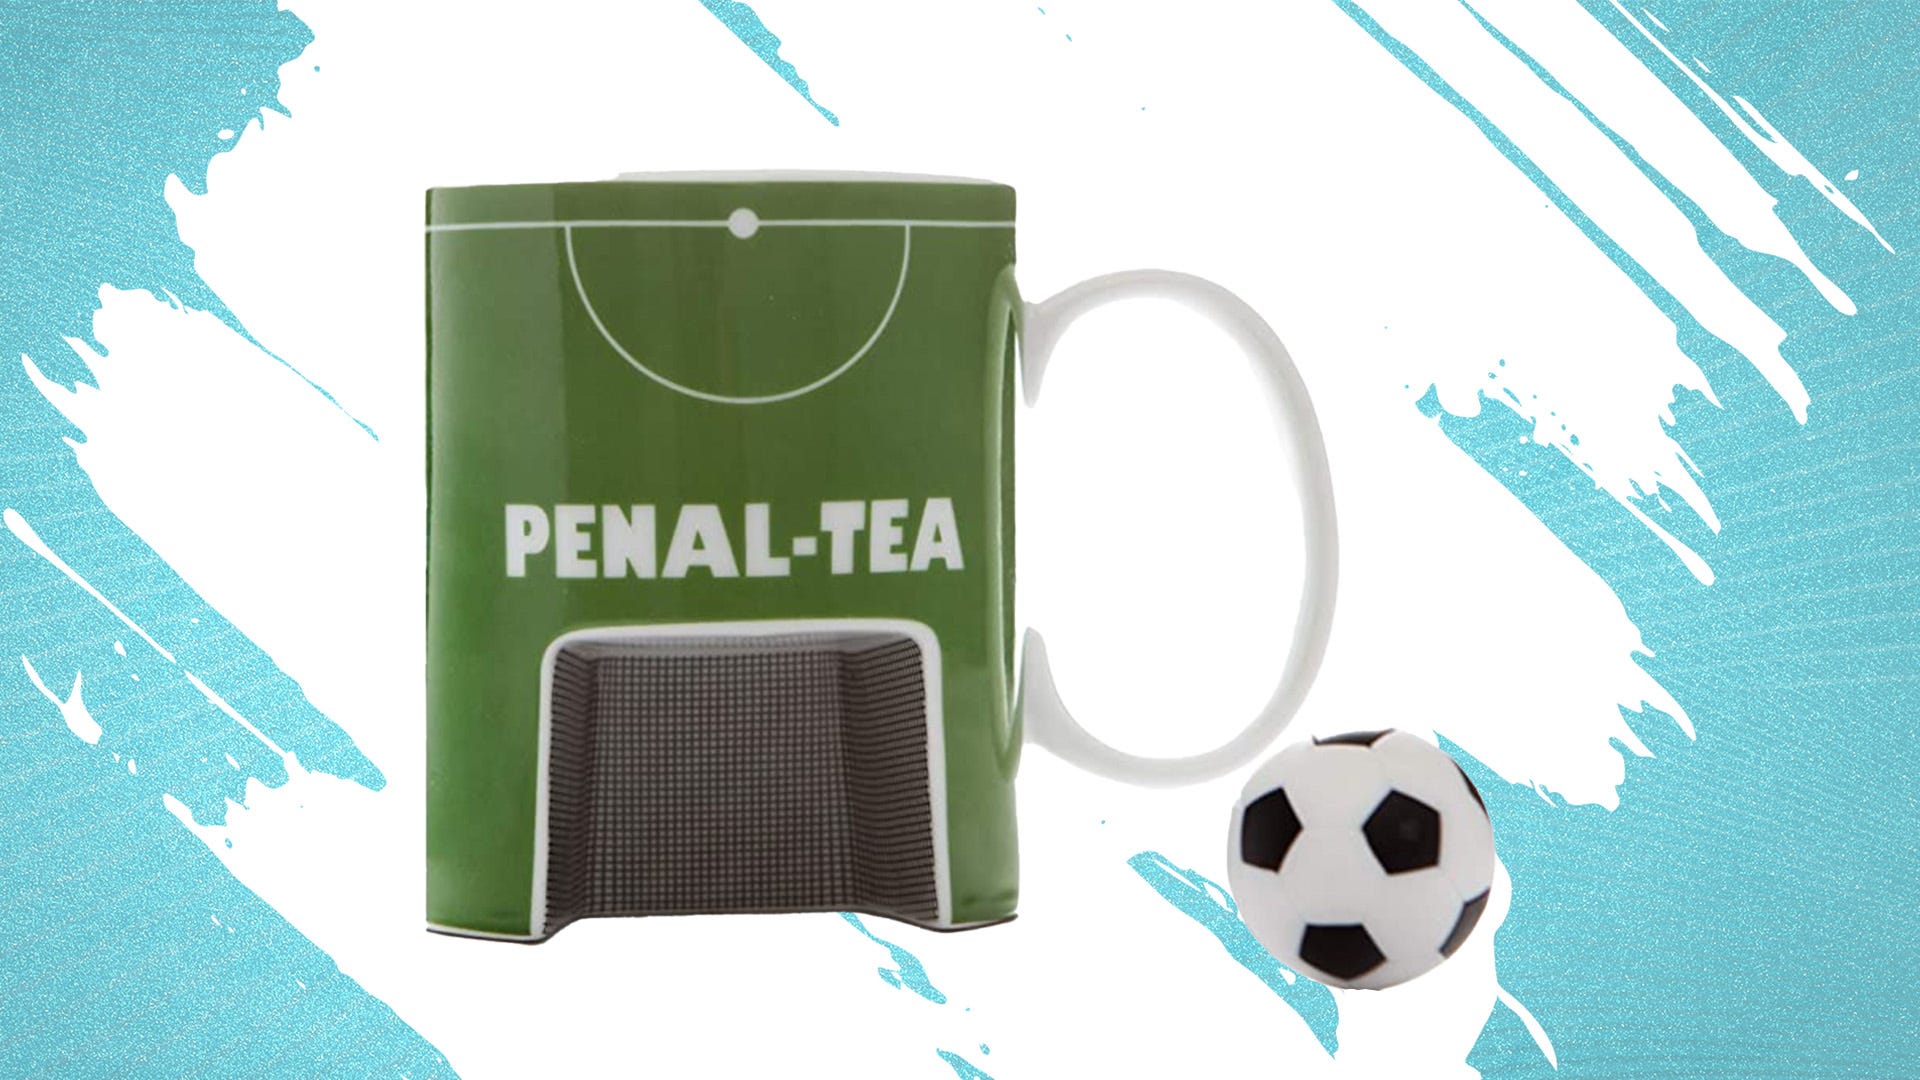 Penal-Tea Mug